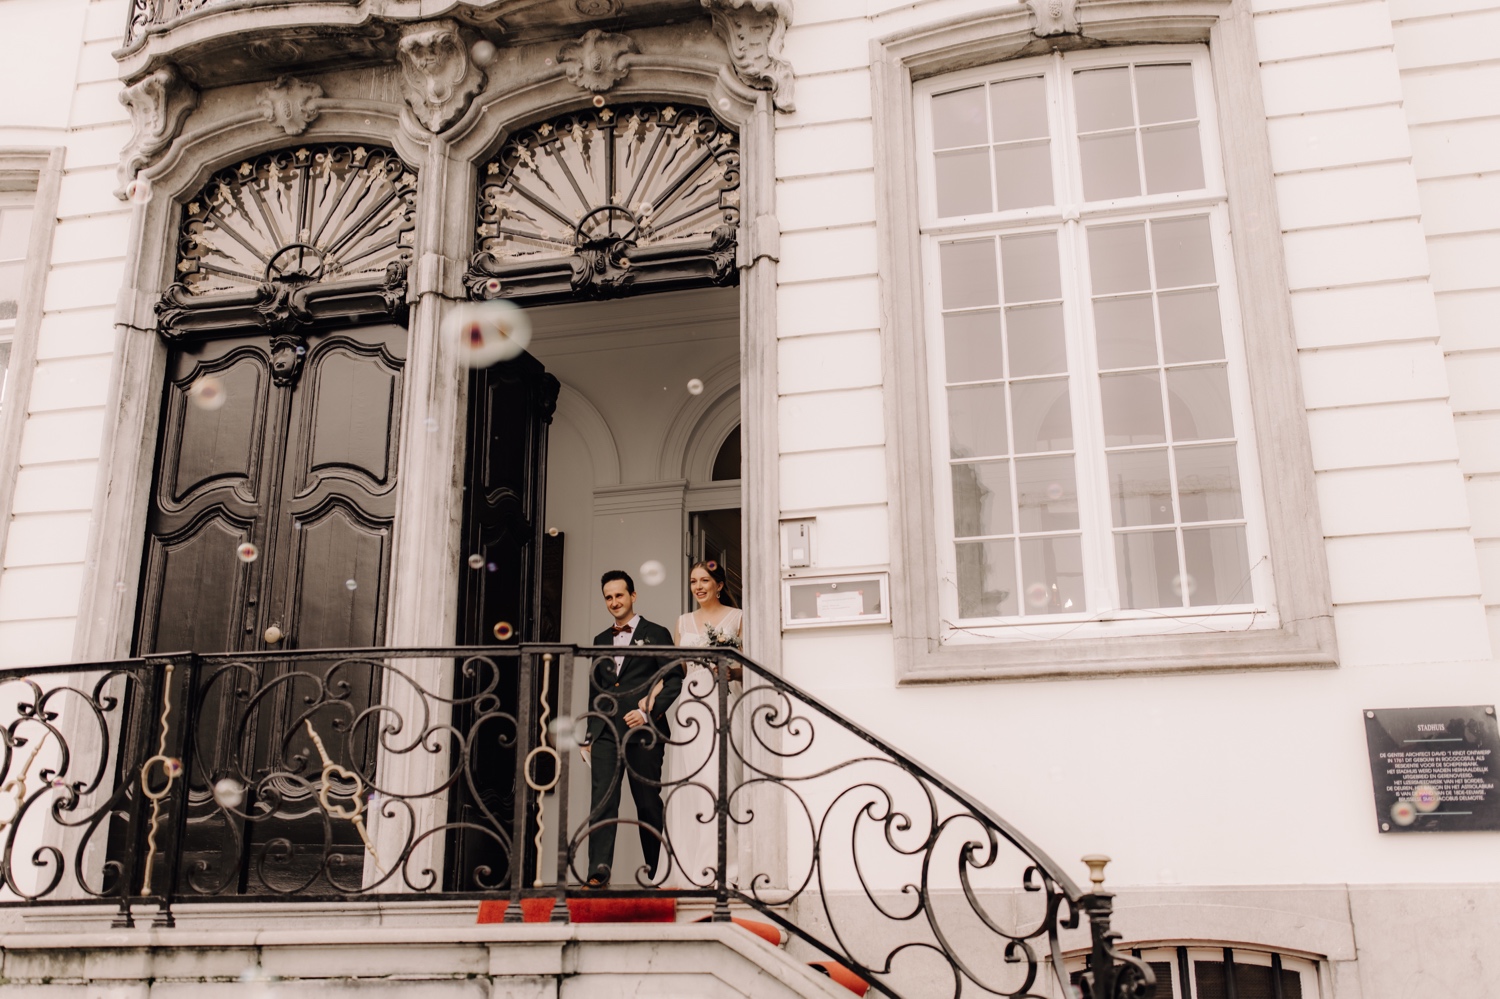 Huwelijksfotograaf Limburg - bruidspaar wandelt gemeentehuis uit